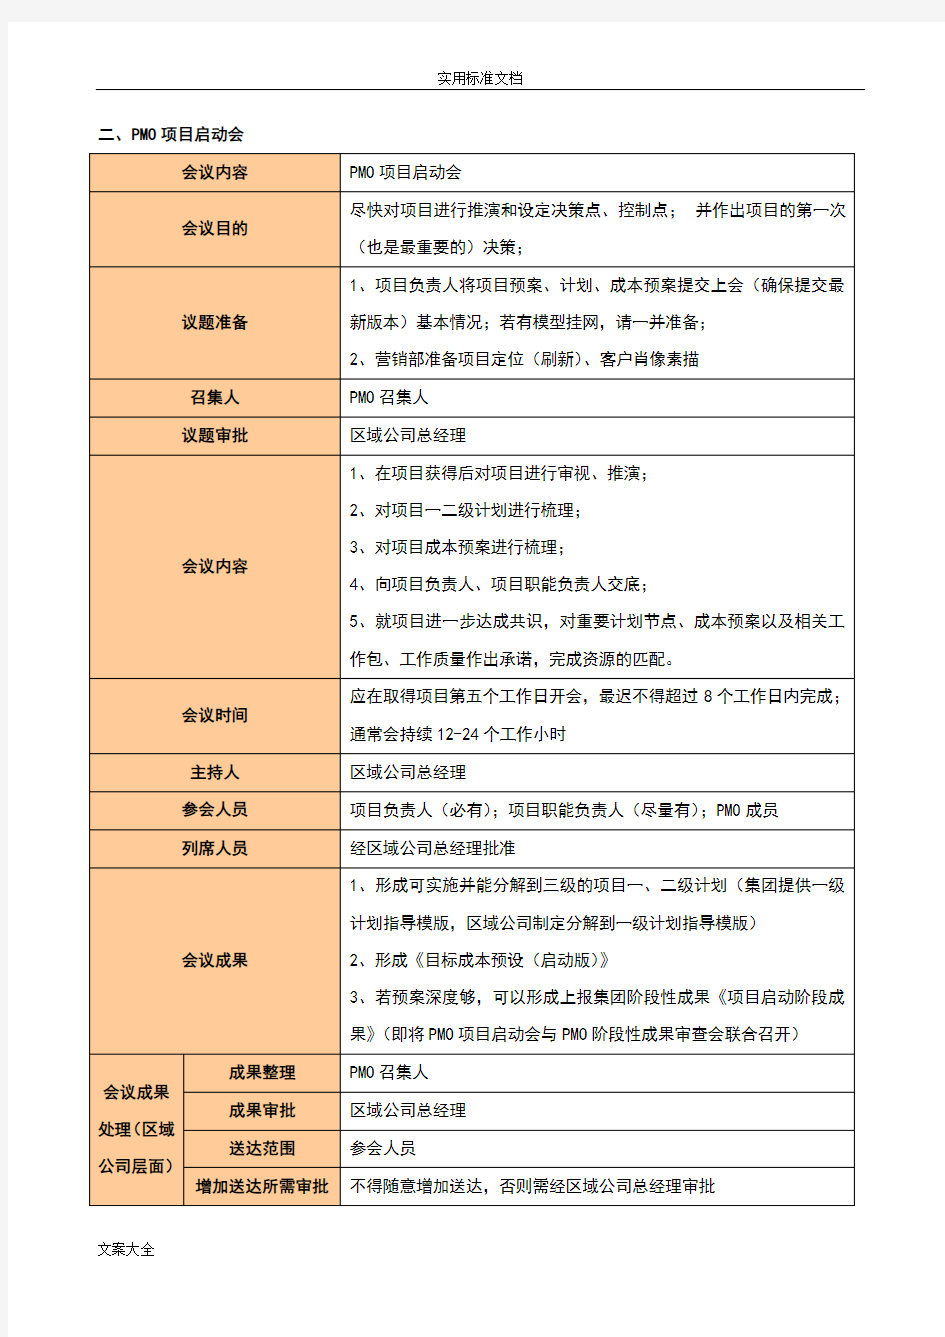 龙湖集团区域公司管理系统运营会议指引